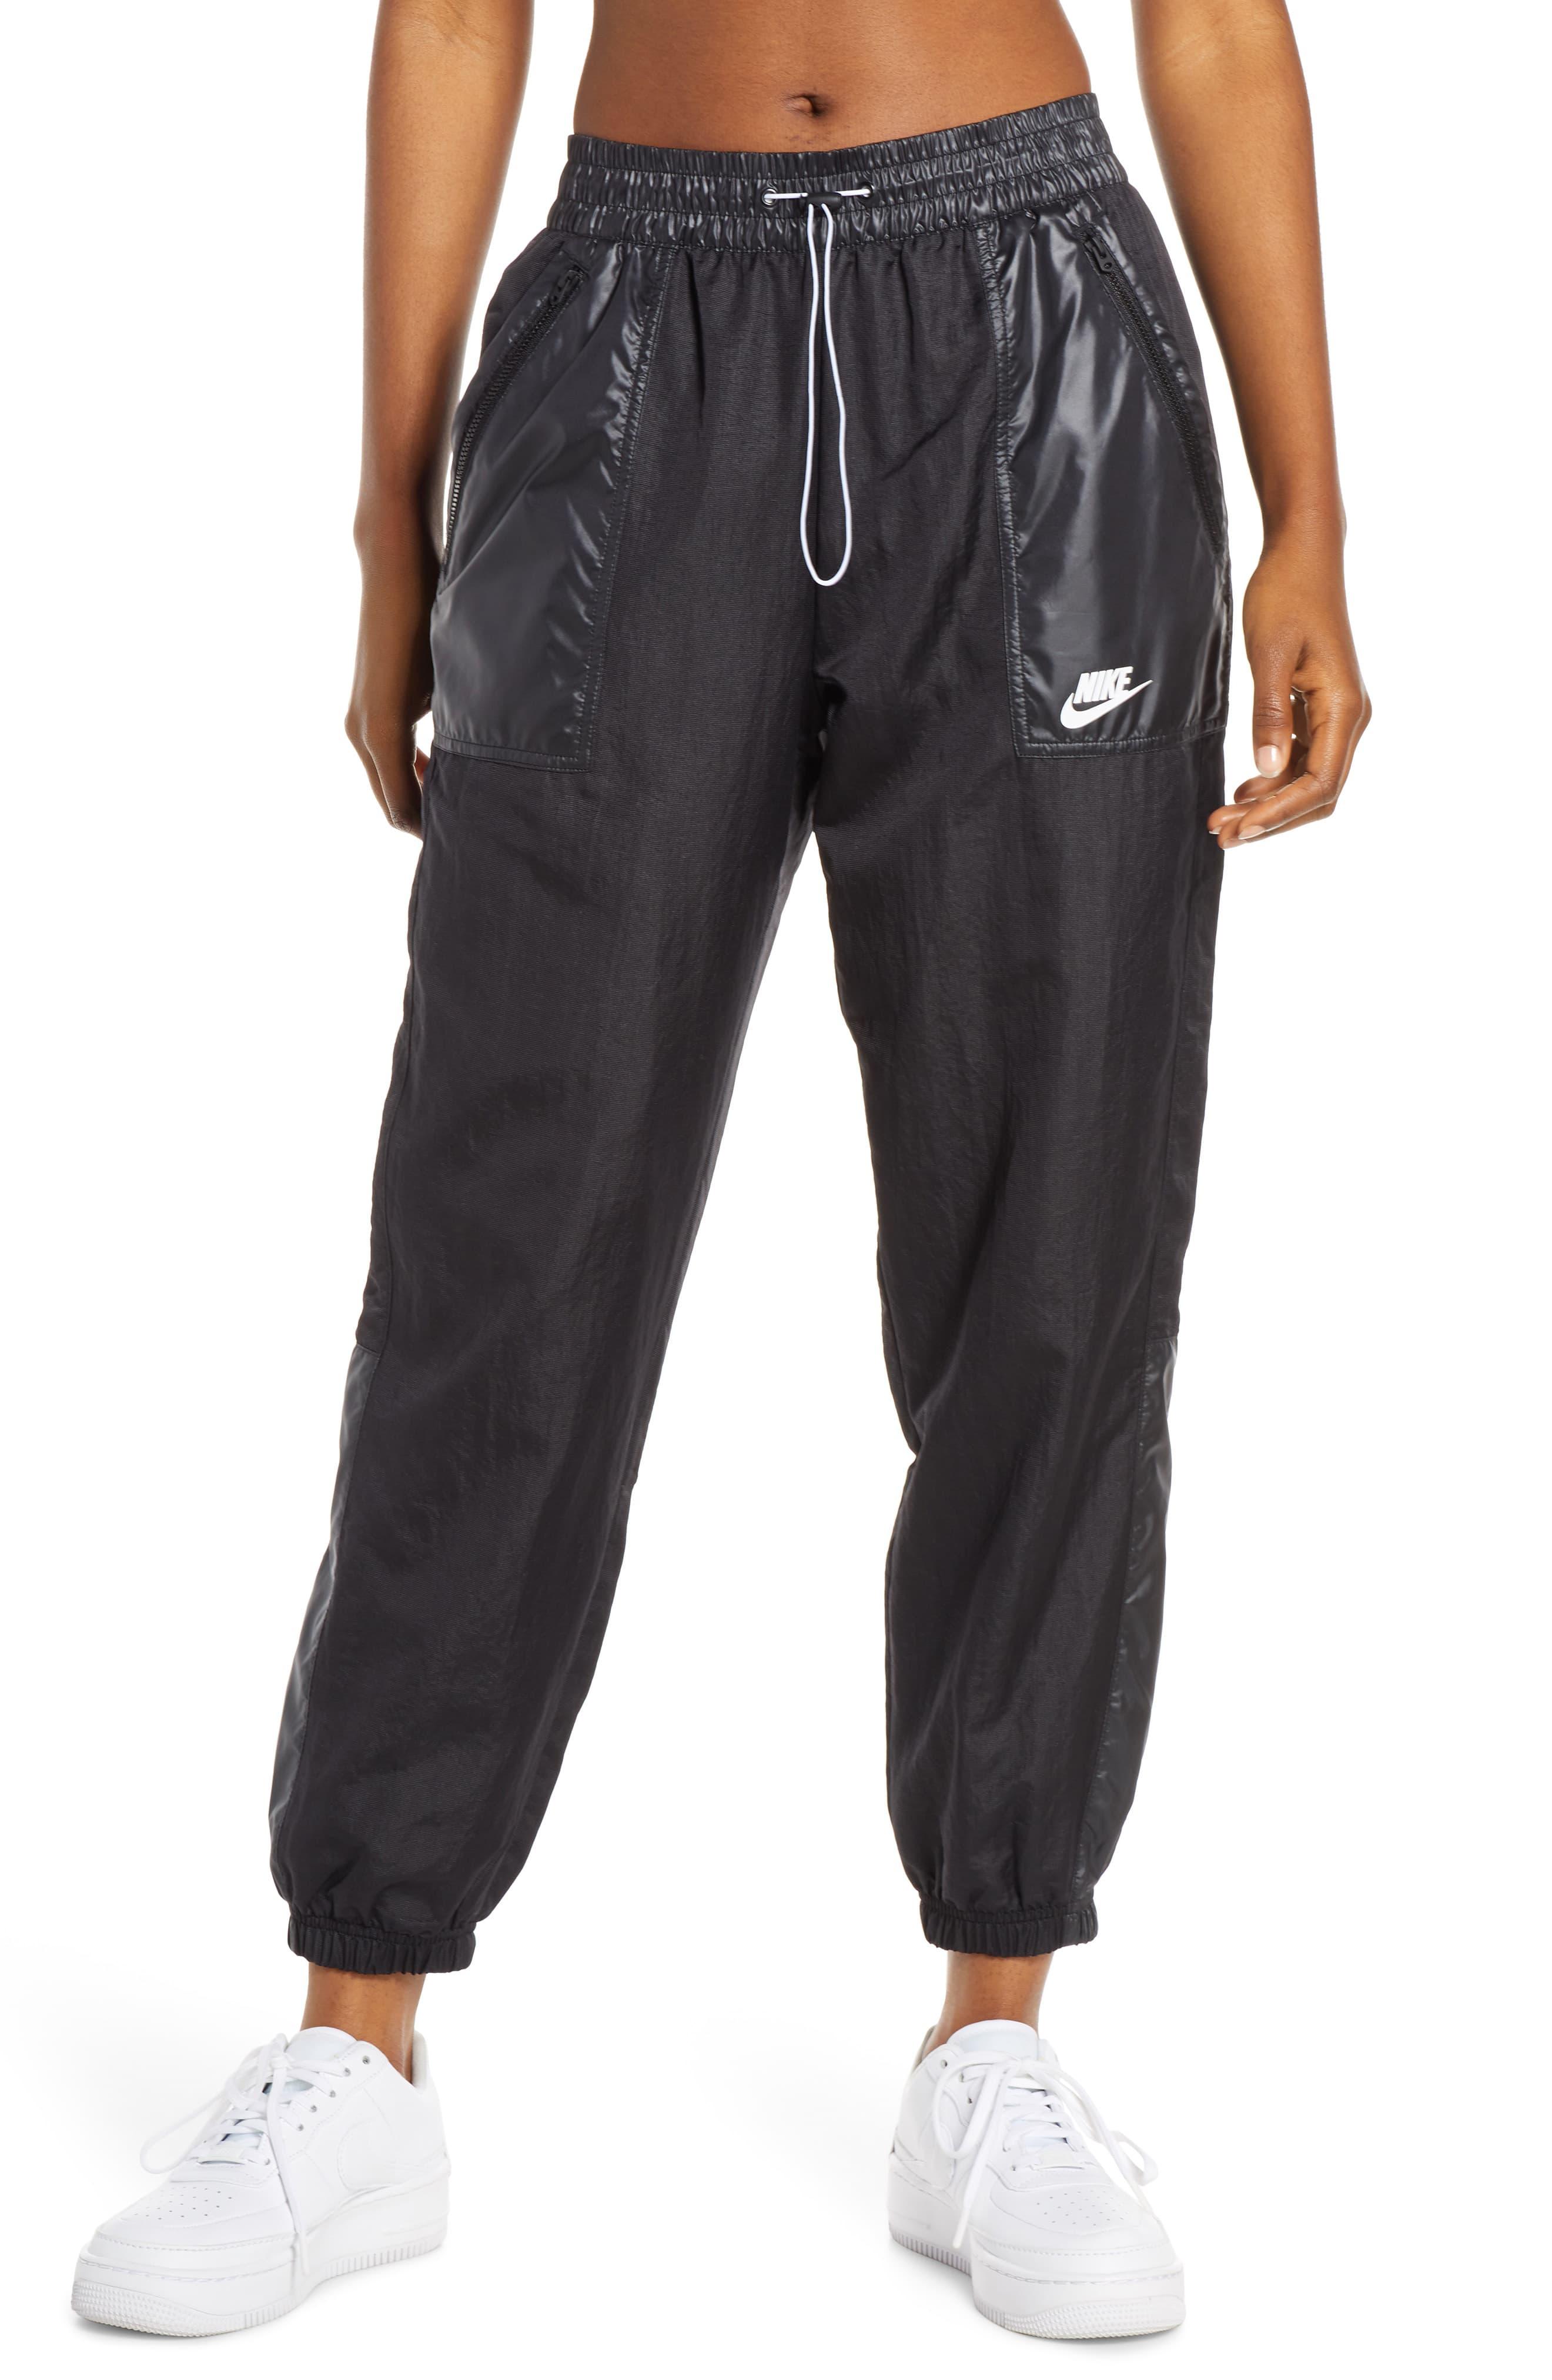 Nike Sportswear Woven Cargo Pants in Black/ White (Black) - Lyst